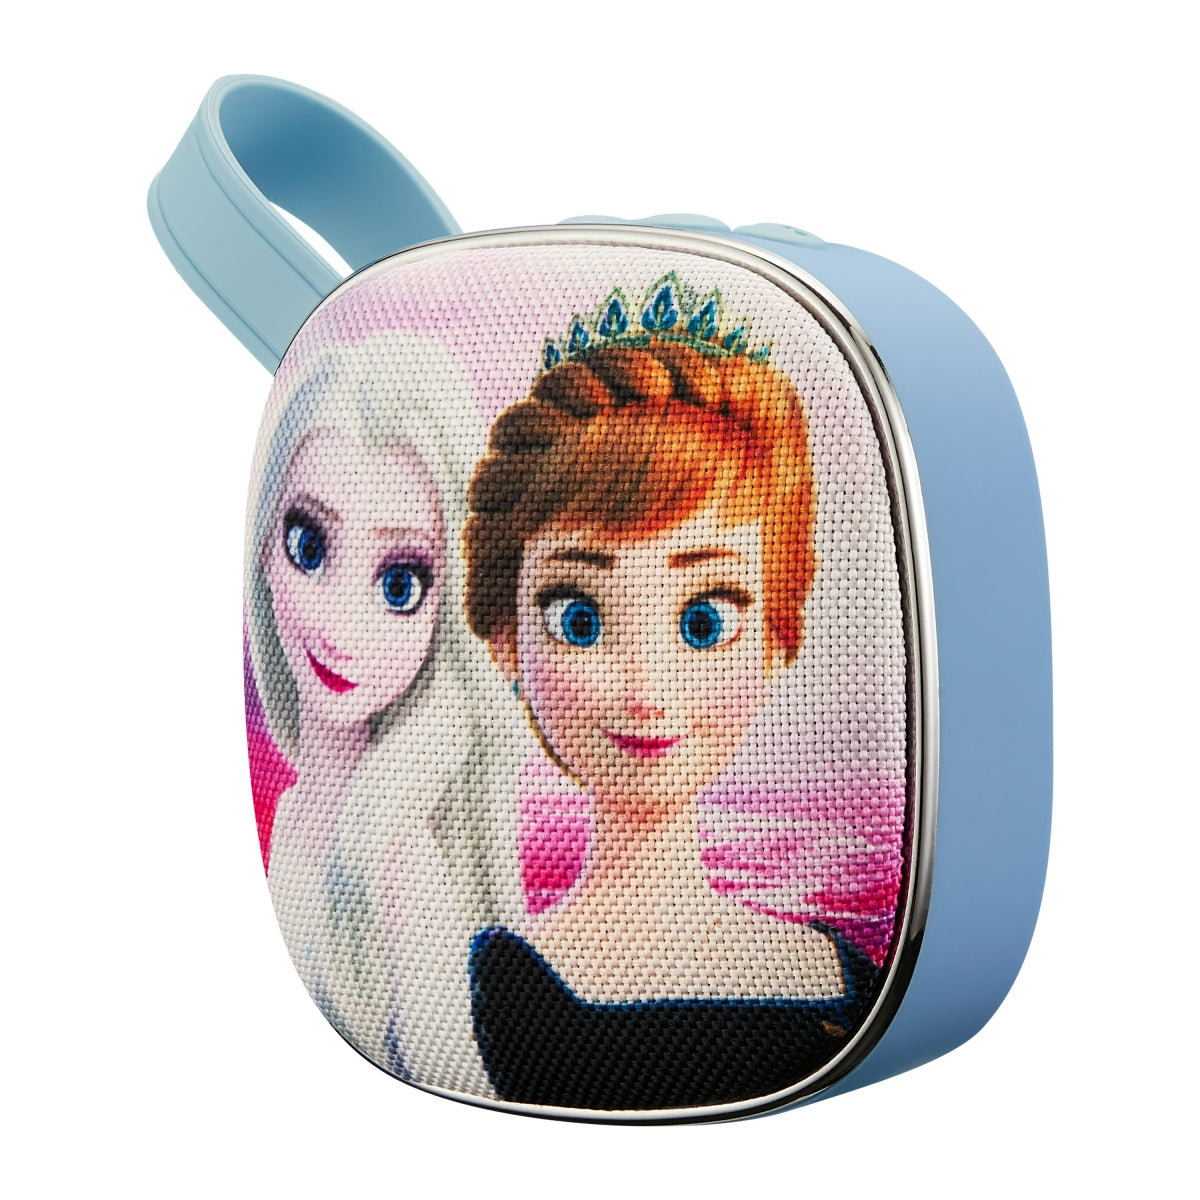 Disney Portable Bluetooth Speaker- Frozen II